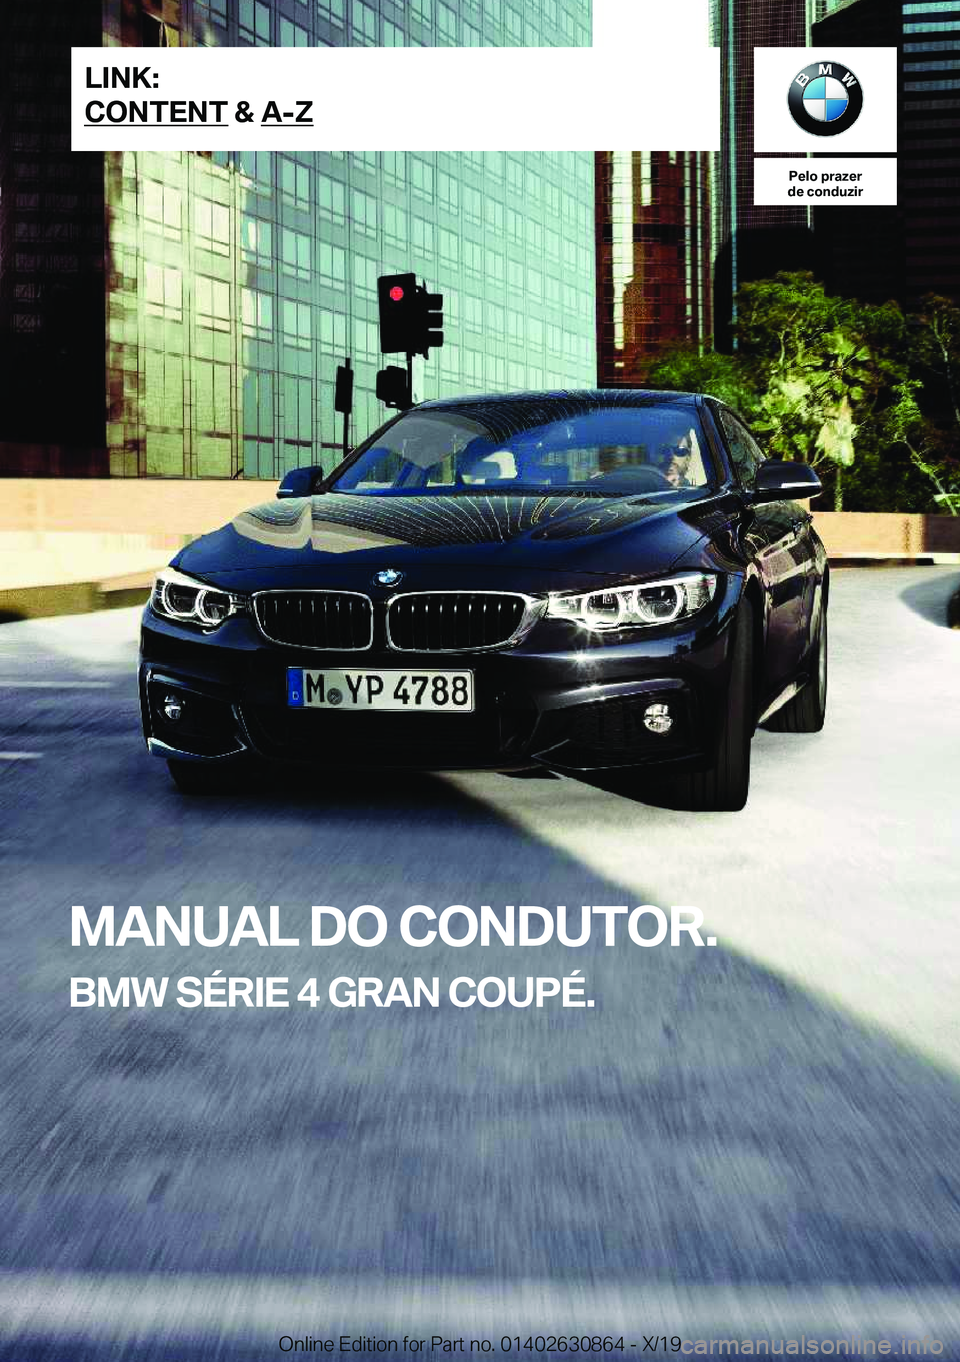 BMW 4 SERIES GRAN COUPE 2020  Manual do condutor (in Portuguese) �P�e�l�o��p�r�a�z�e�r
�d�e��c�o�n�d�u�z�i�r
�M�A�N�U�A�L��D�O��C�O�N�D�U�T�O�R�.
�B�M�W��S�É�R�I�E��4��G�R�A�N��C�O�U�P�É�.�L�I�N�K�:
�C�O�N�T�E�N�T��&��A�-�;�O�n�l�i�n�e��E�d�i�t�i�o�n�